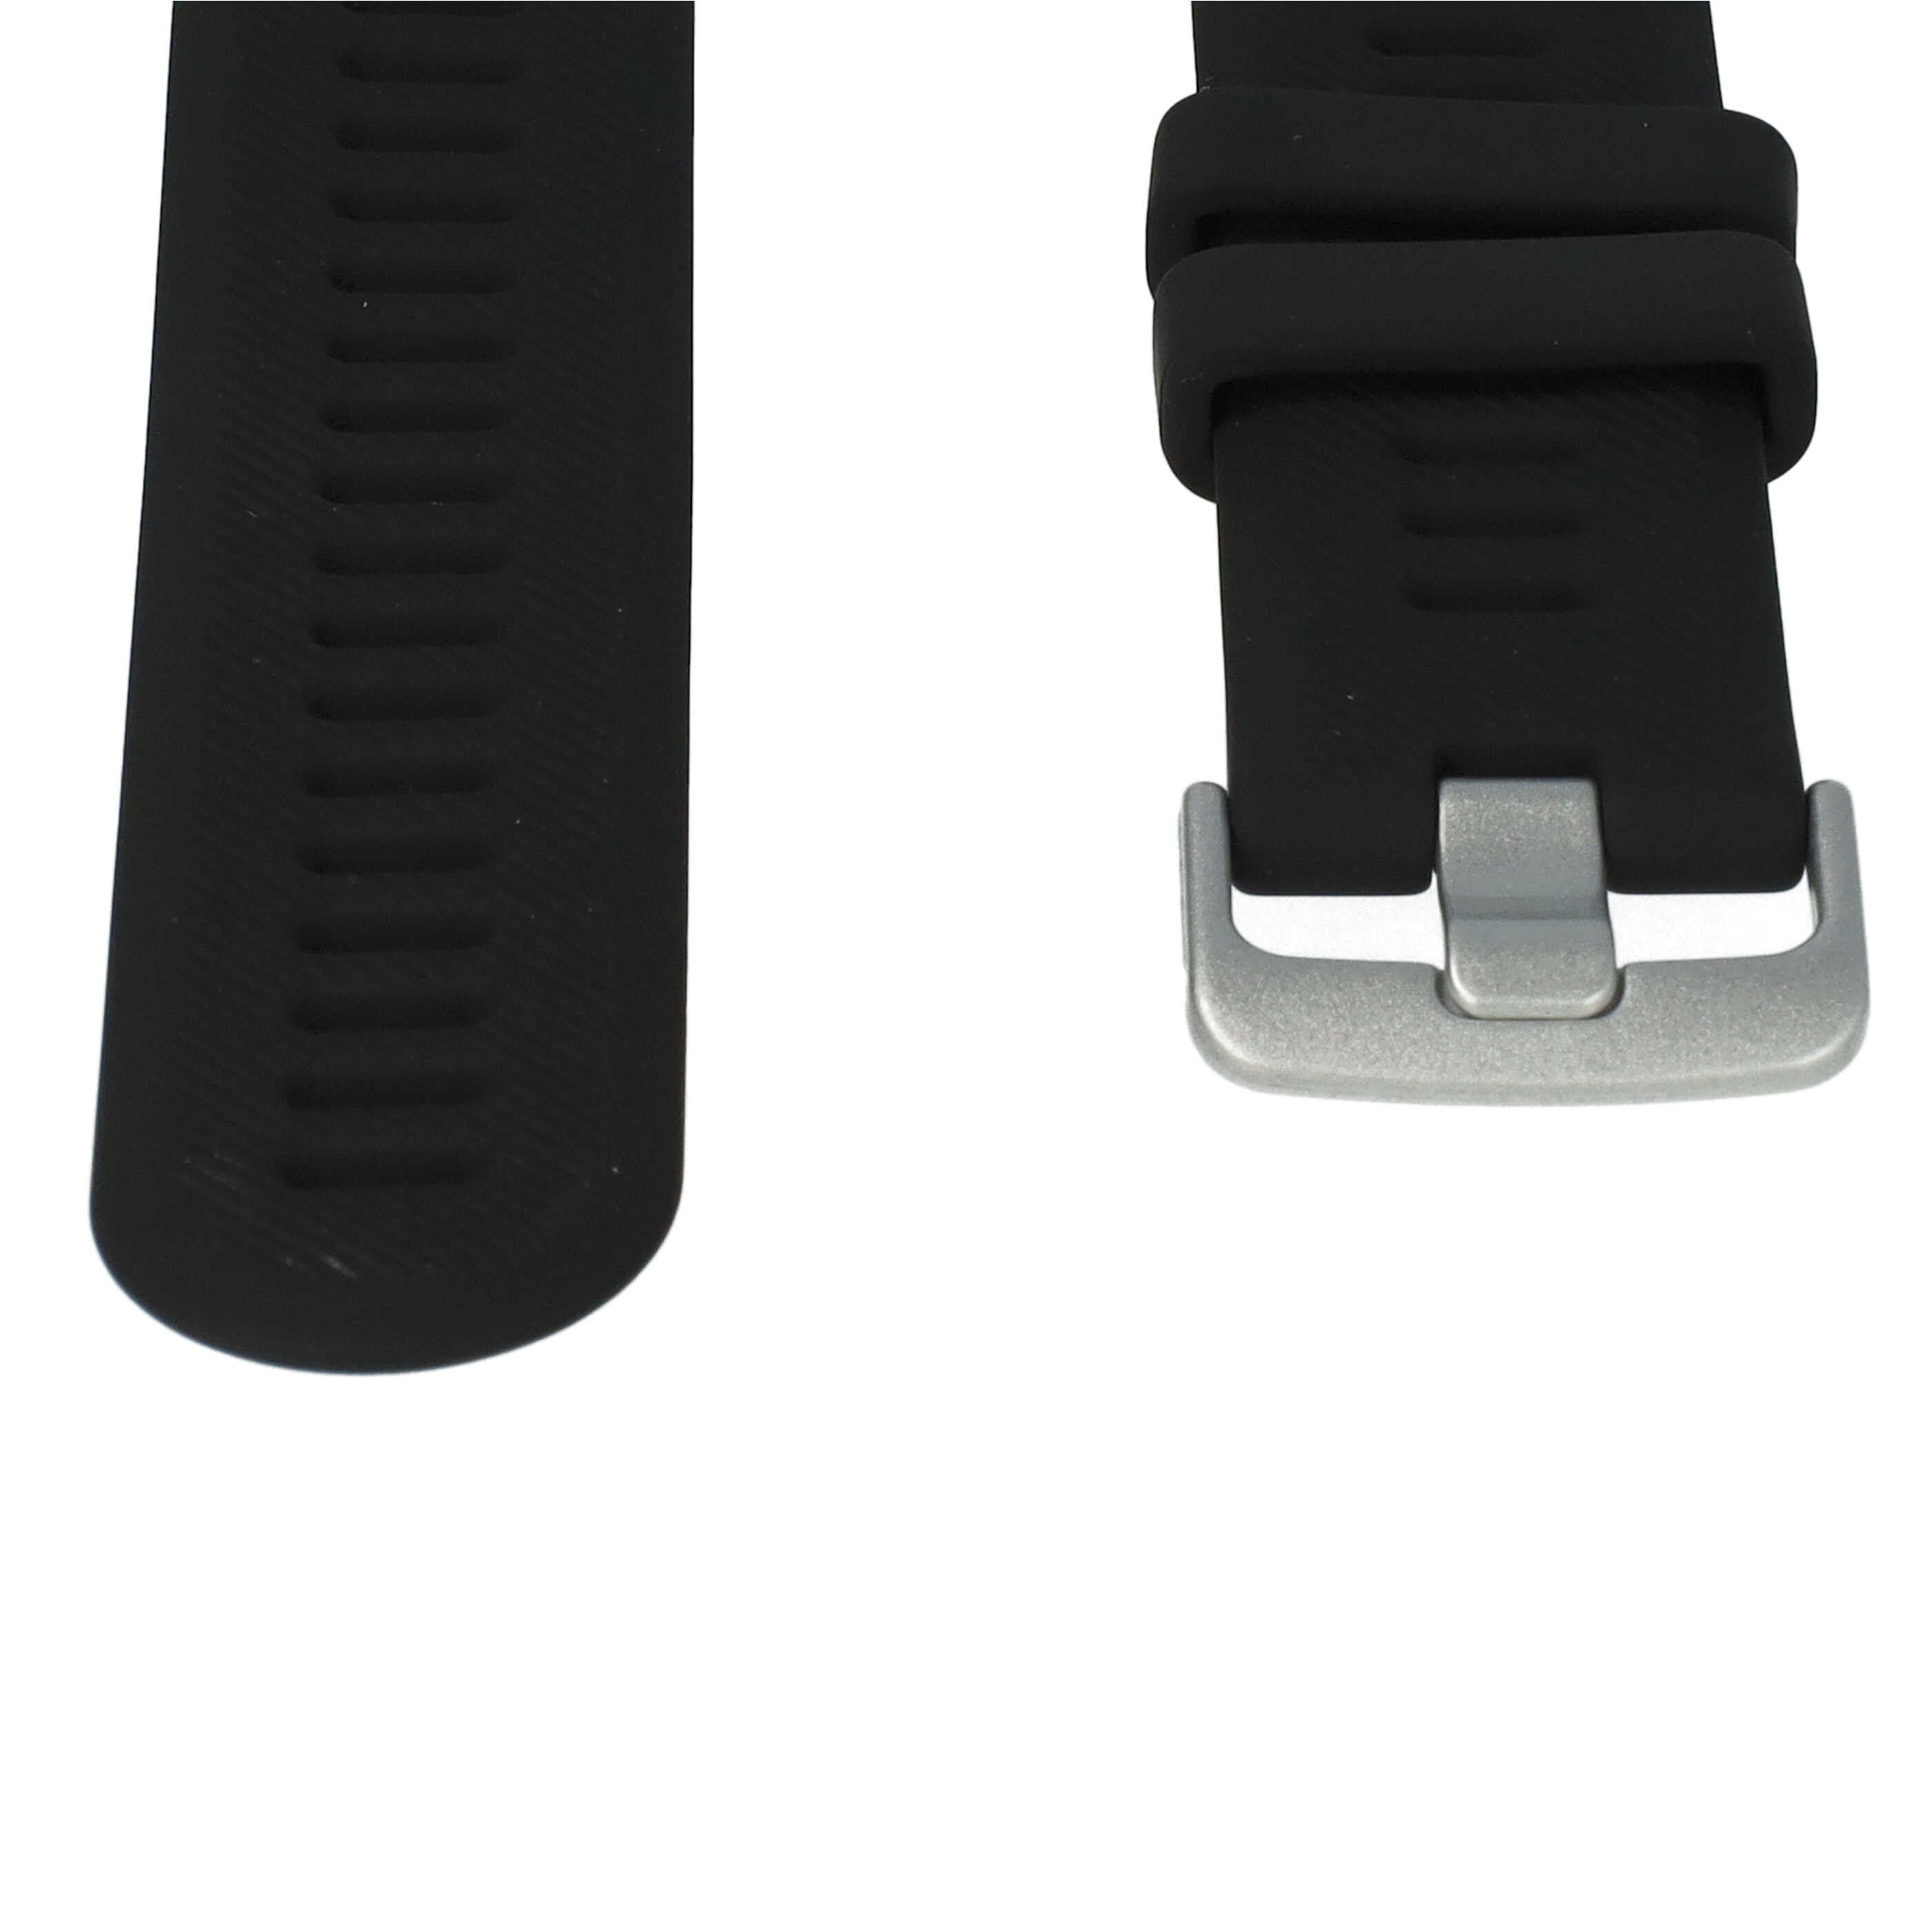 correa para Garmin Forerunner smartwatch - largo 9 + 12,2 cm, ancho 22 mm, silicona, negro